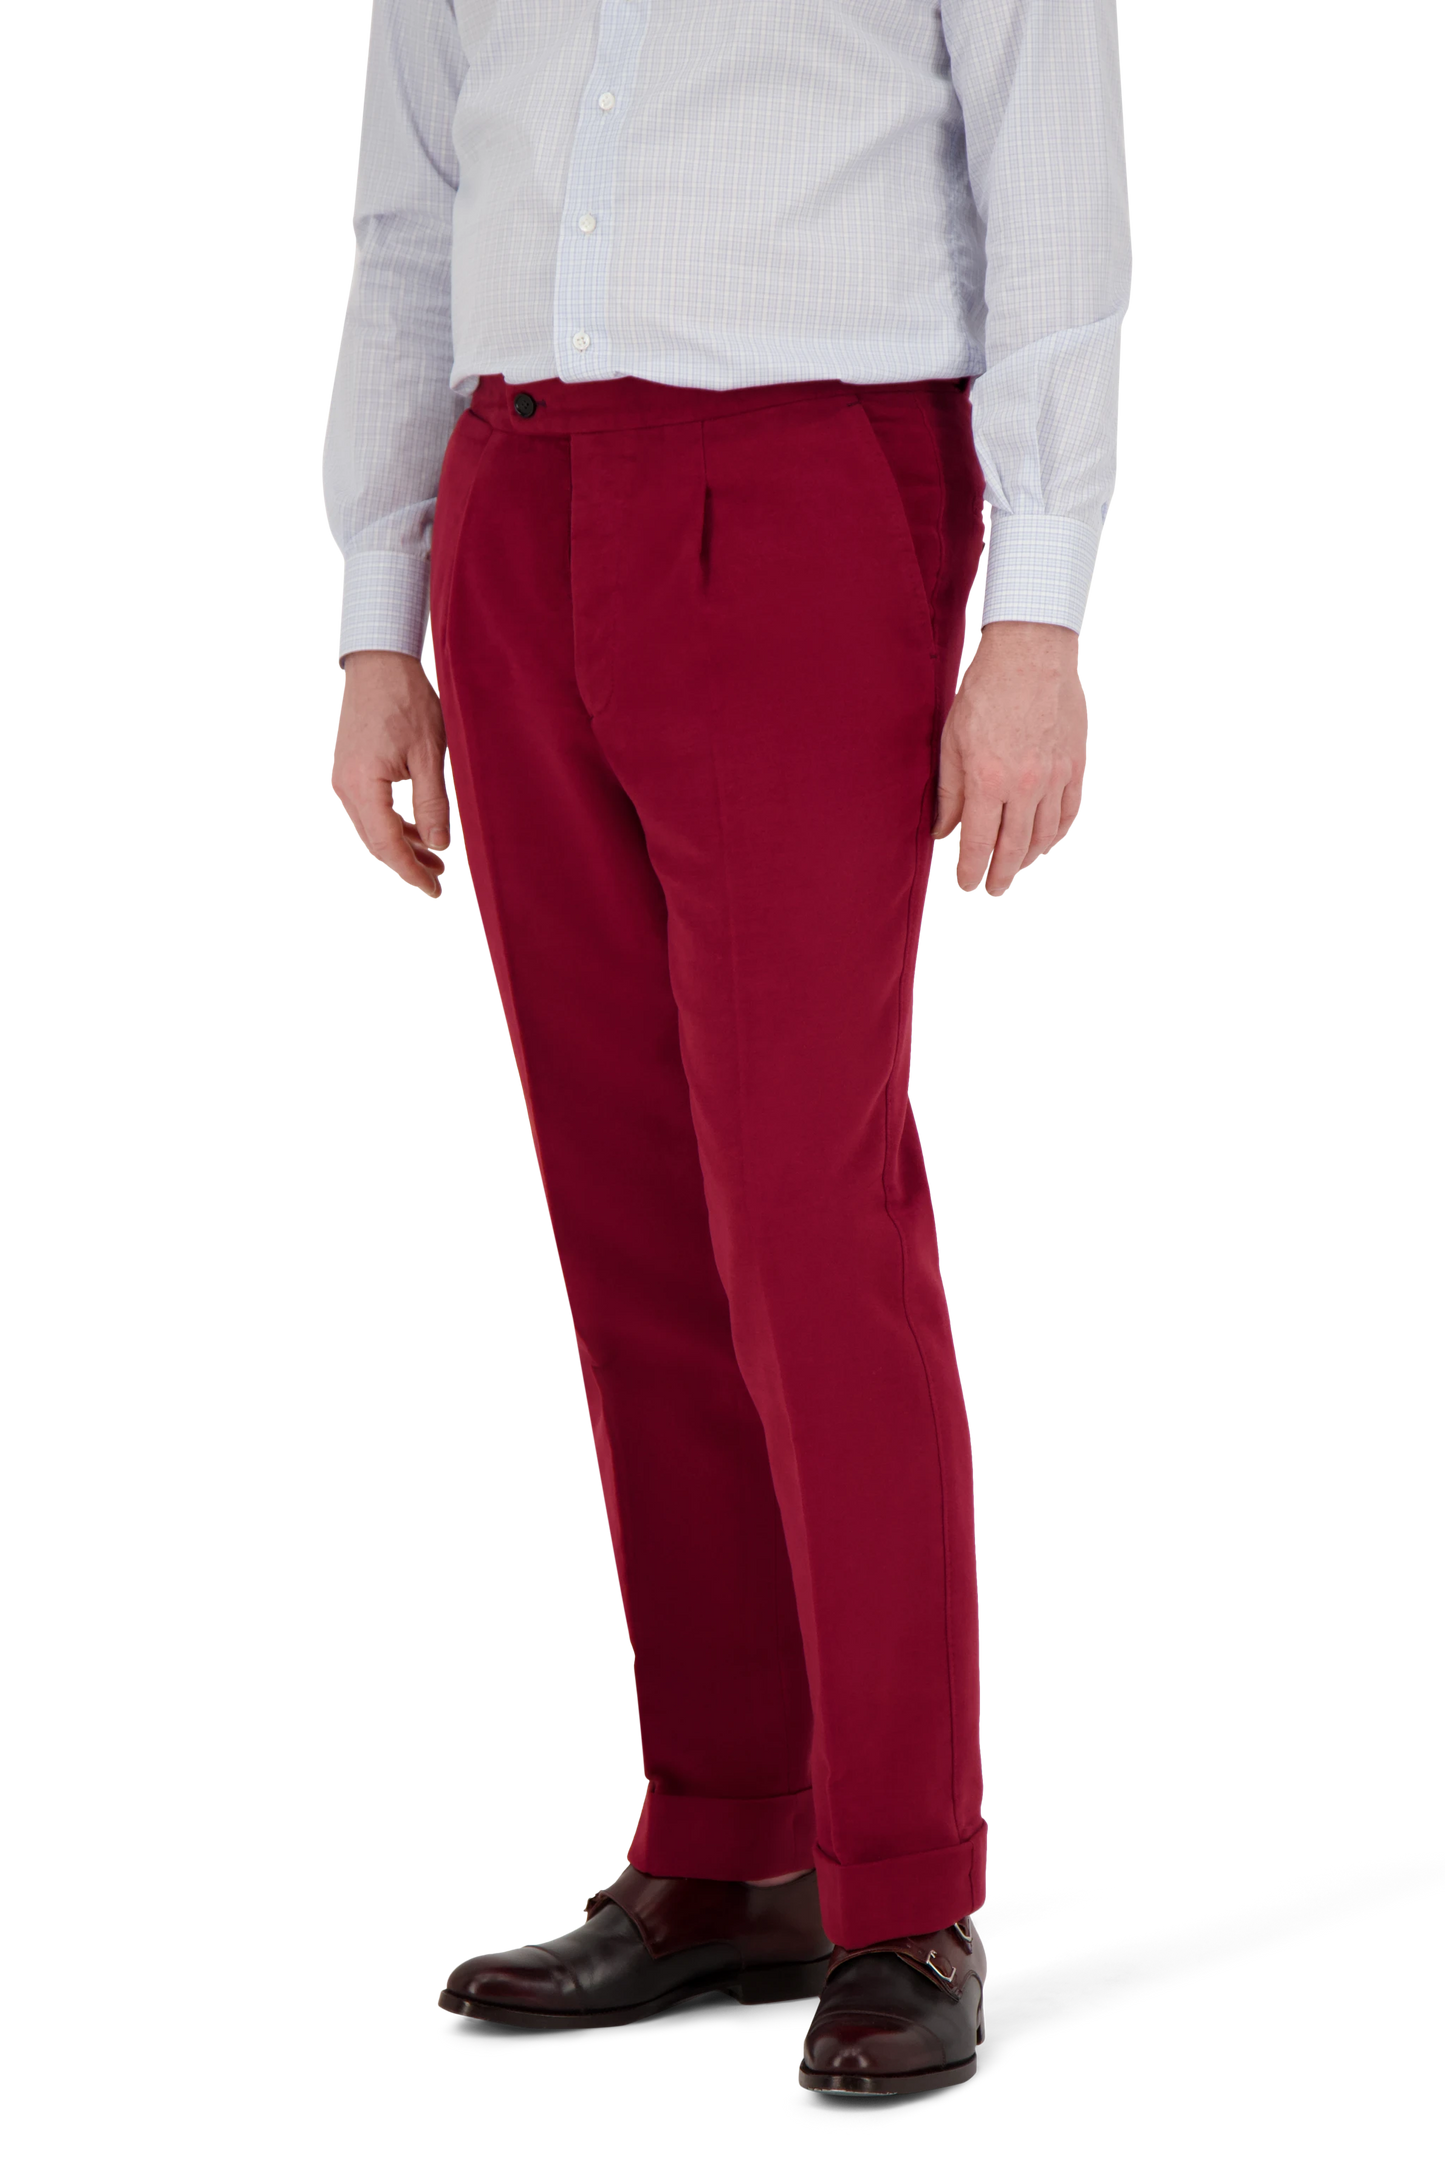 Trousers Cincinnati red Cotton Moleskin